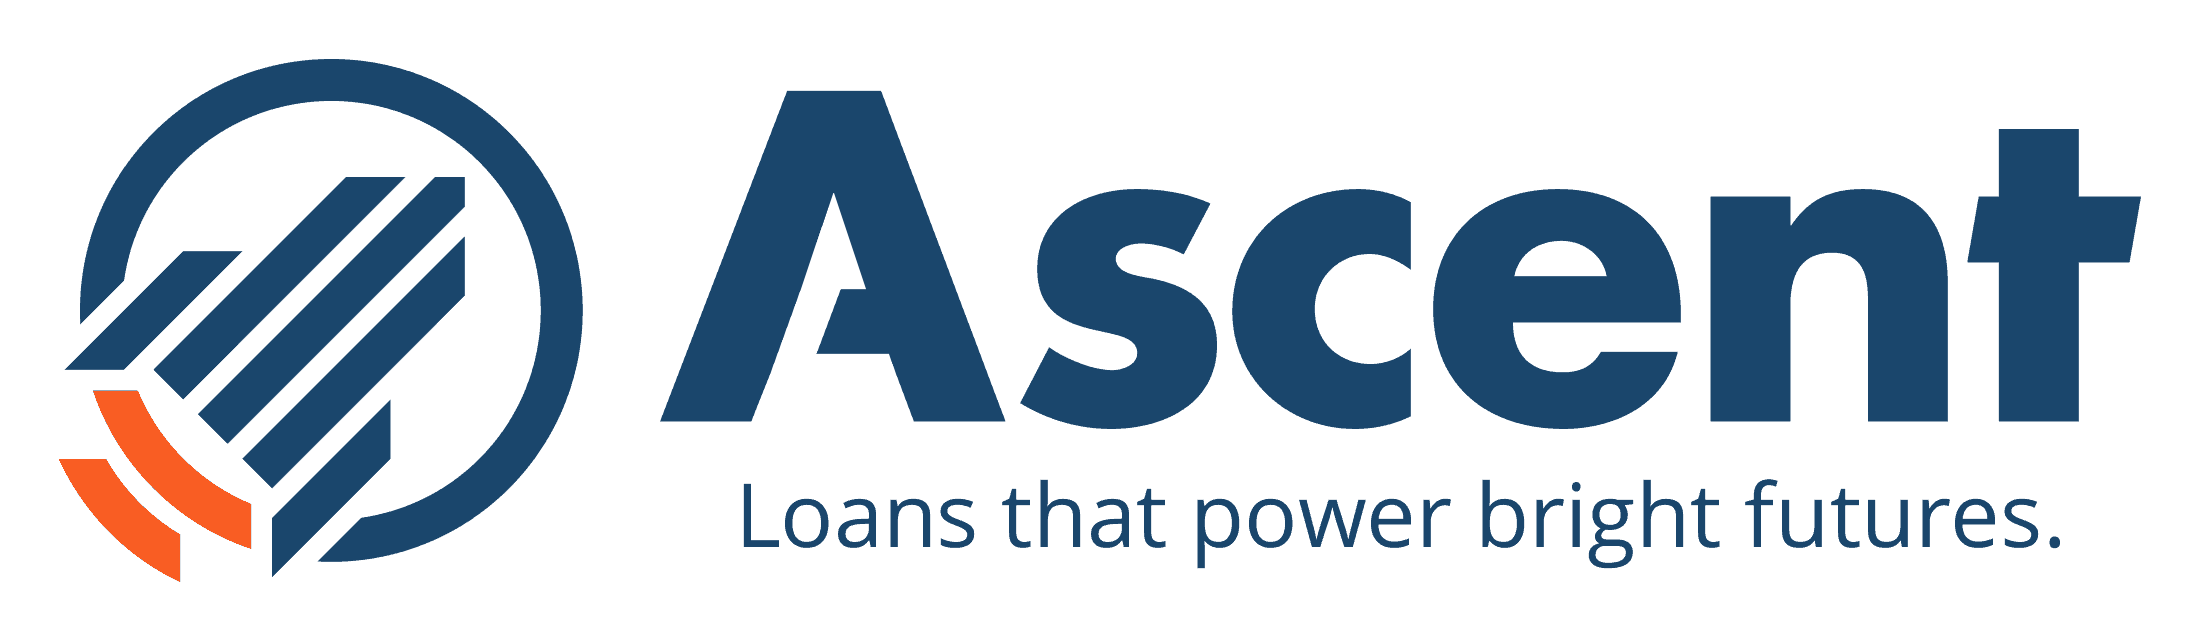 Ascent Student Loans